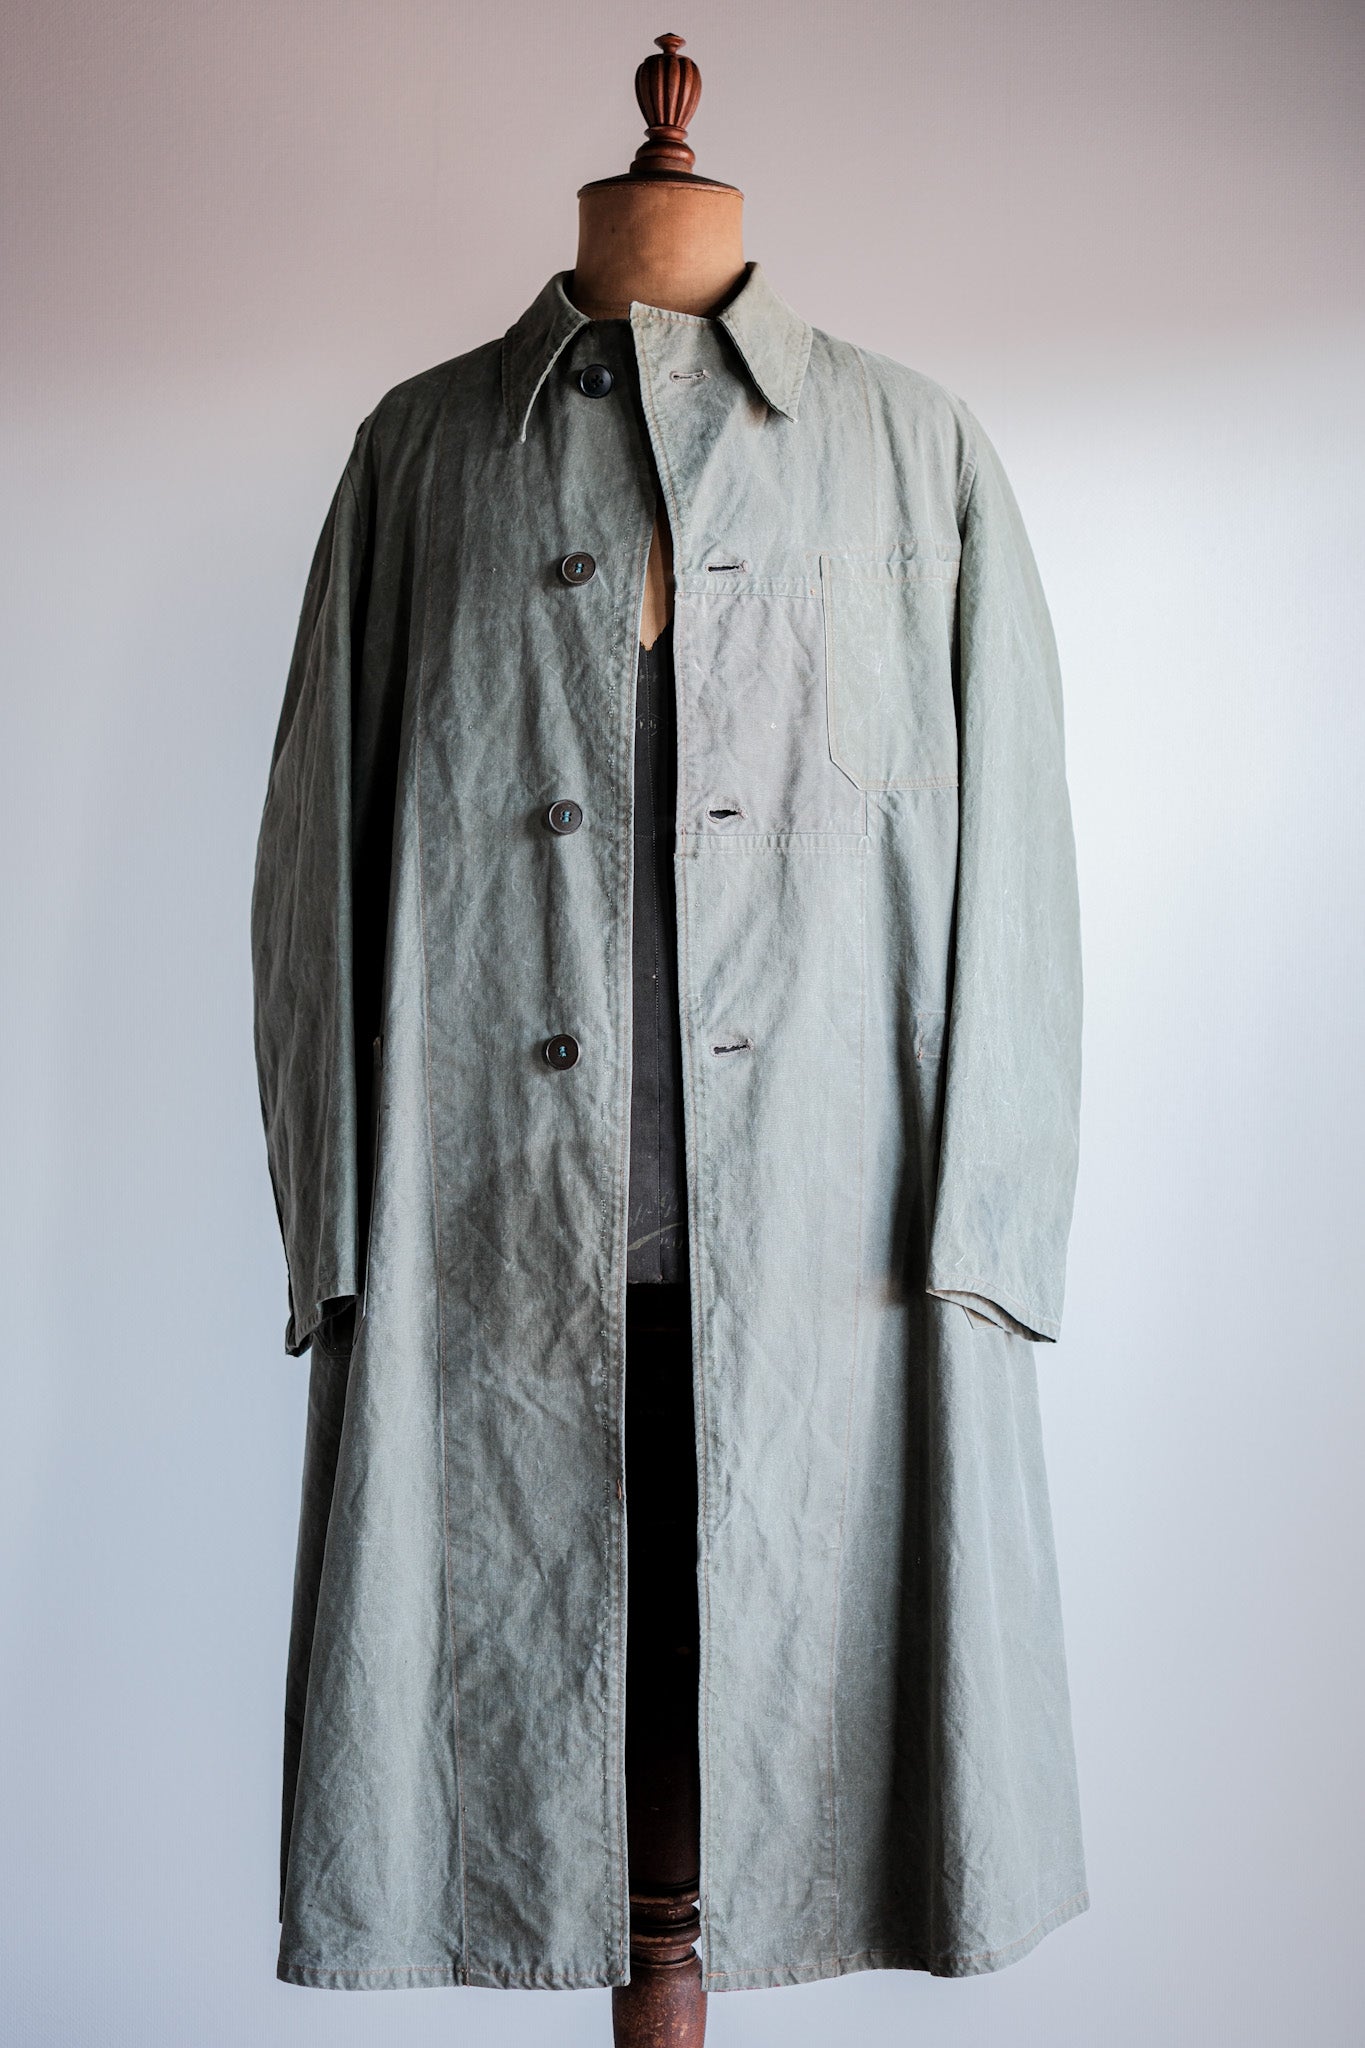 [〜50年代]德國復古綠色棉花工作外套